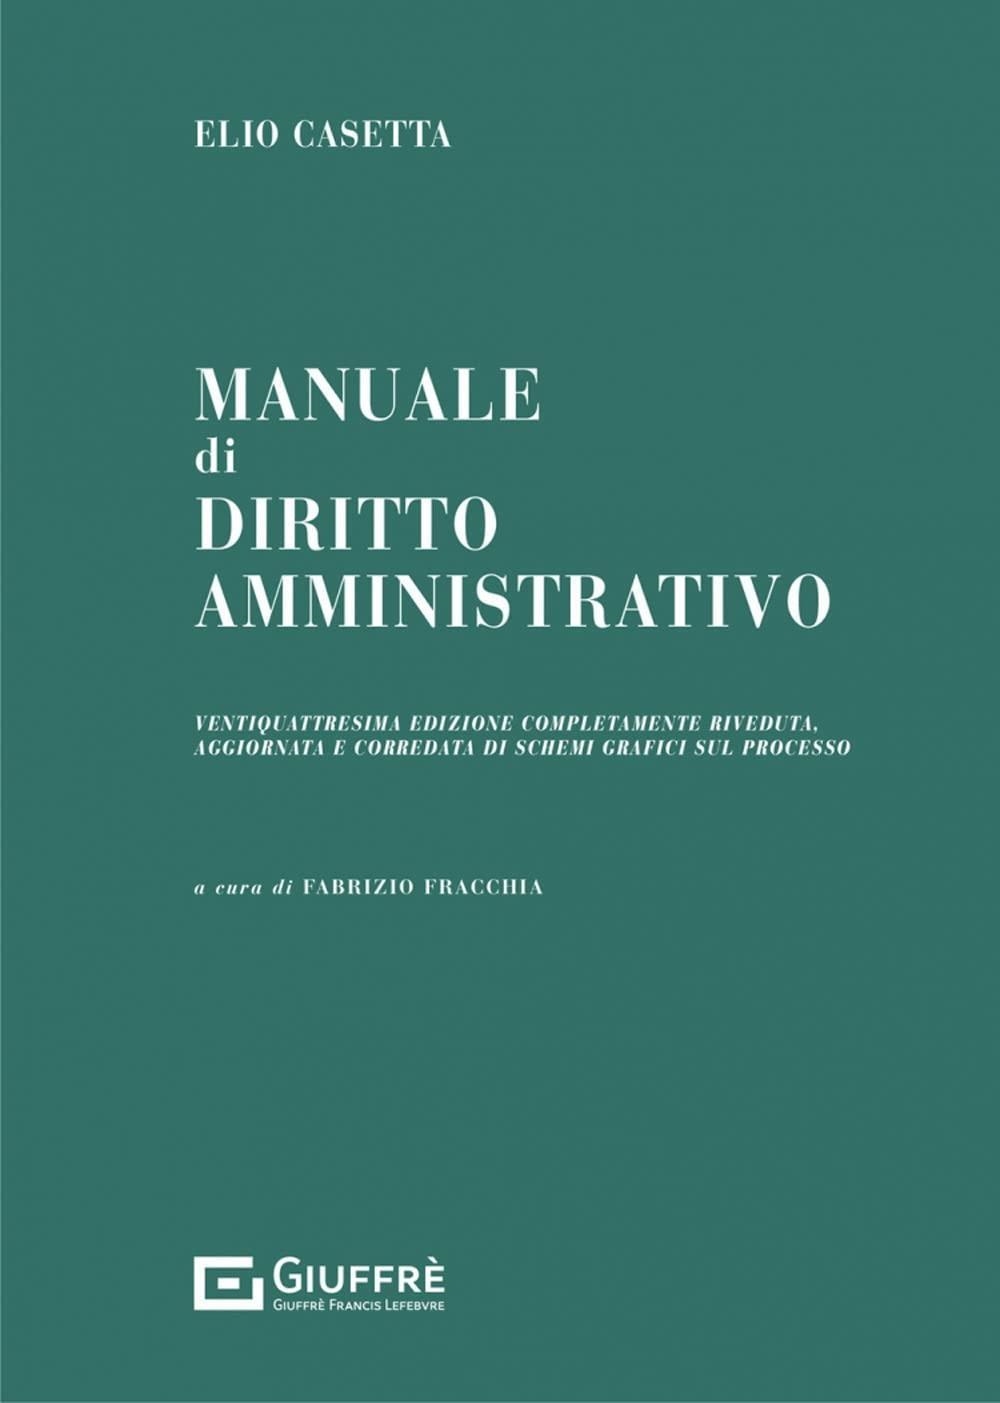 Libri Fabrizio Fracchia / Elio Casetta - Manuale Di Diritto Ammnistrativo NUOVO SIGILLATO, EDIZIONE DEL 12/07/2022 SUBITO DISPONIBILE